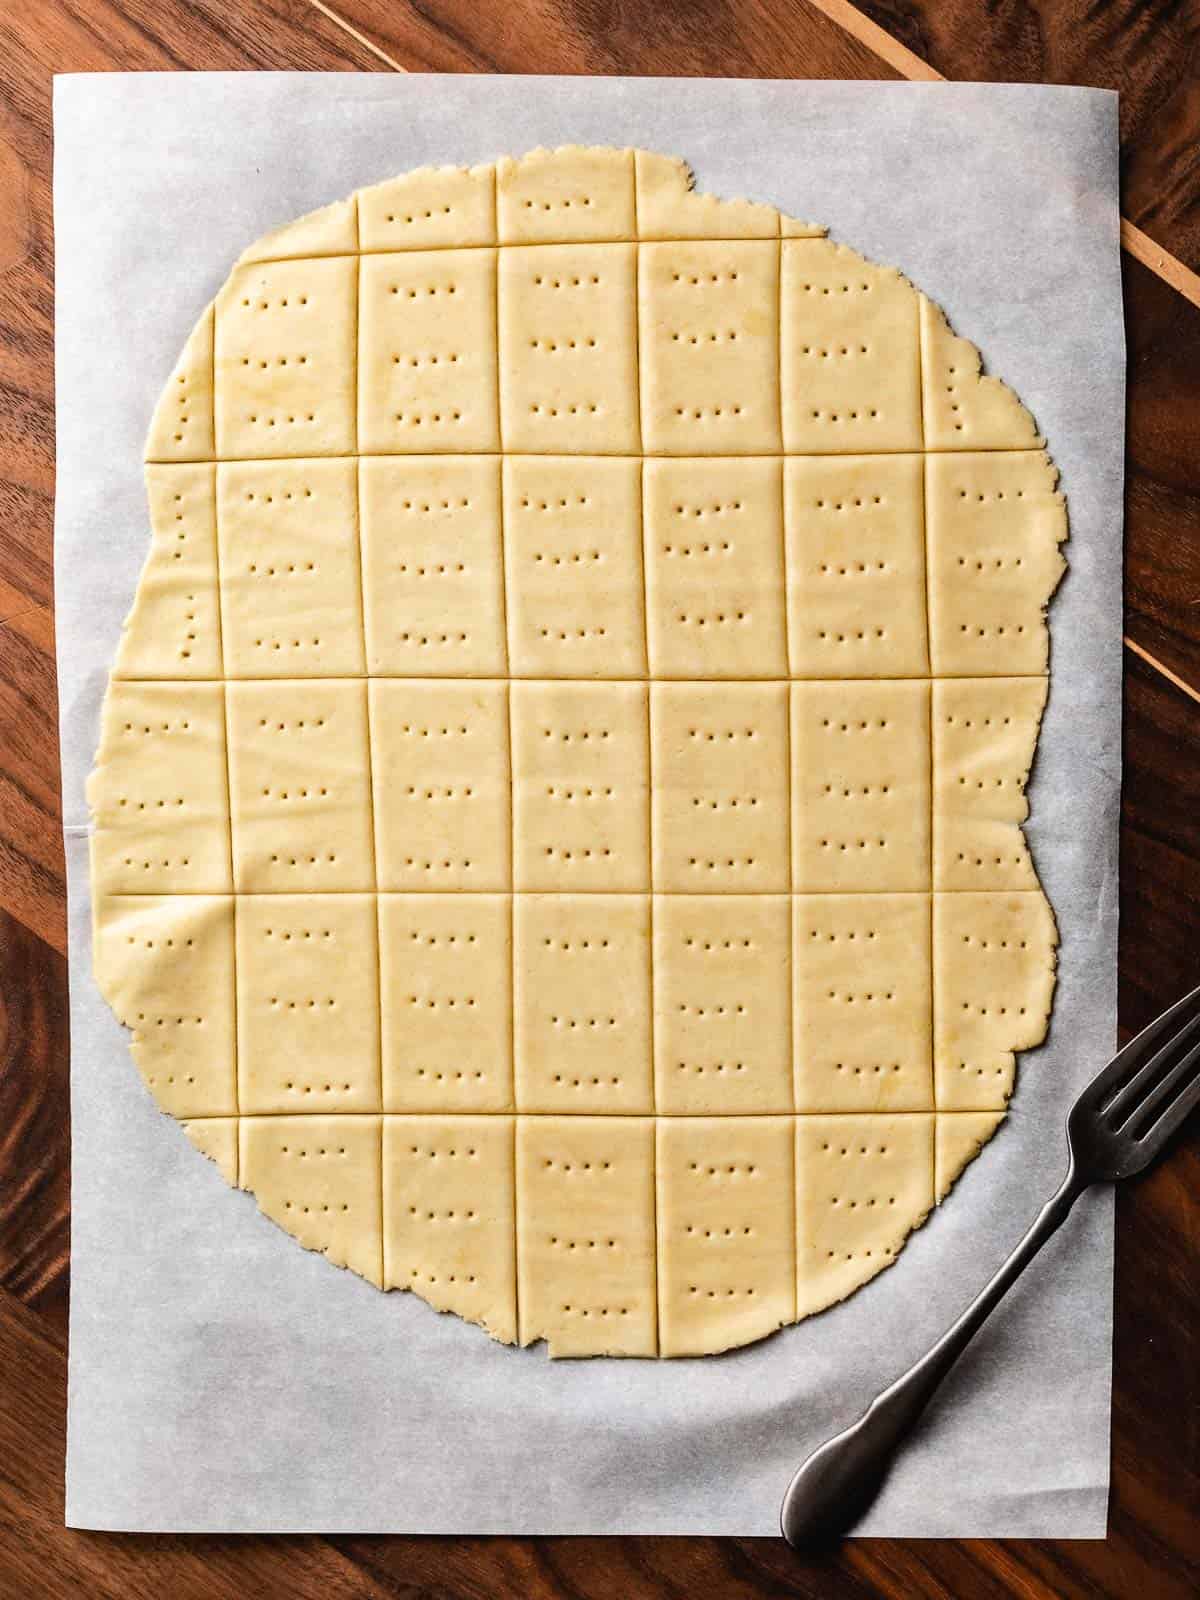 Sourdough butter cracker dough cut out on parchment paper.